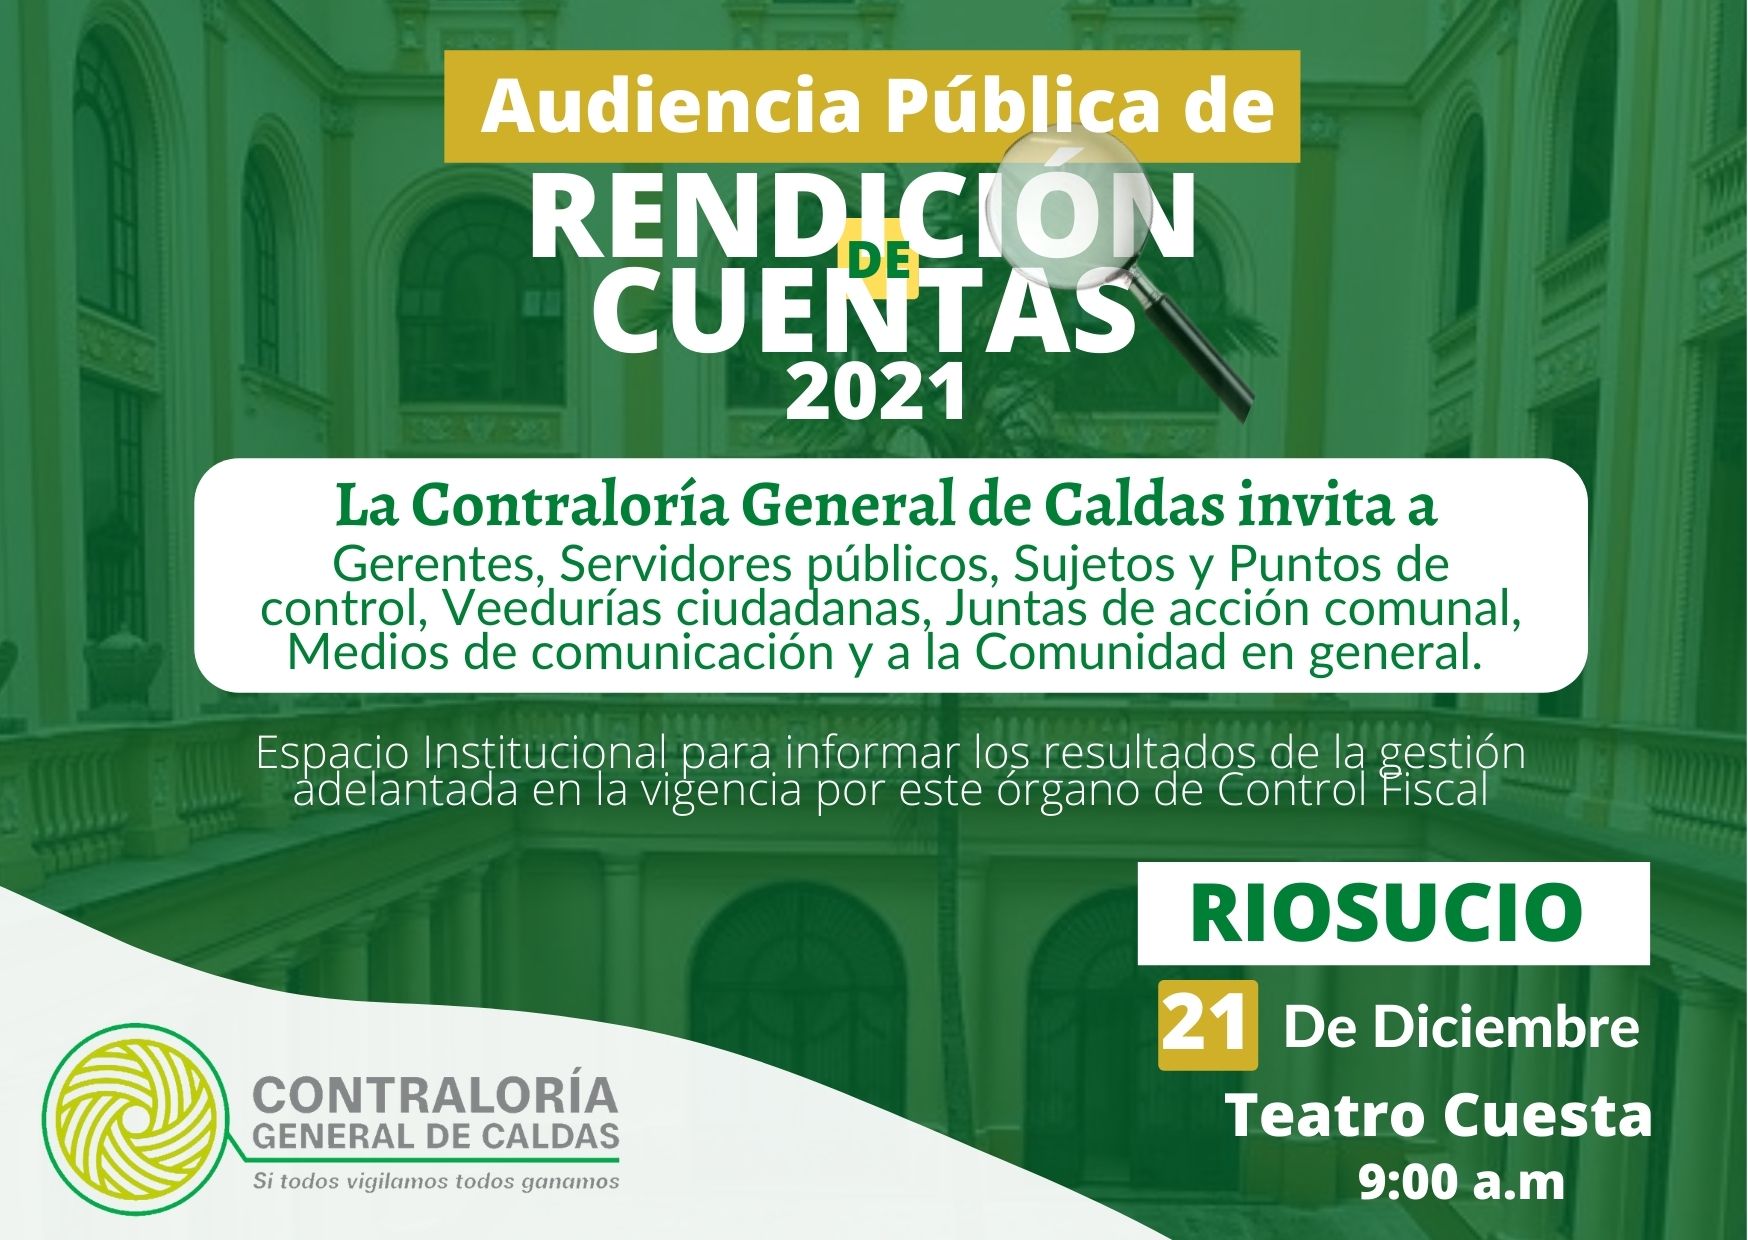 La Contraloría General de Caldas invita a la Audiencia Pública de Rendición de cuentas de la Vigencia 2021 que se realizará el día 21 de Diciembre, en el Municipio de Riosucio